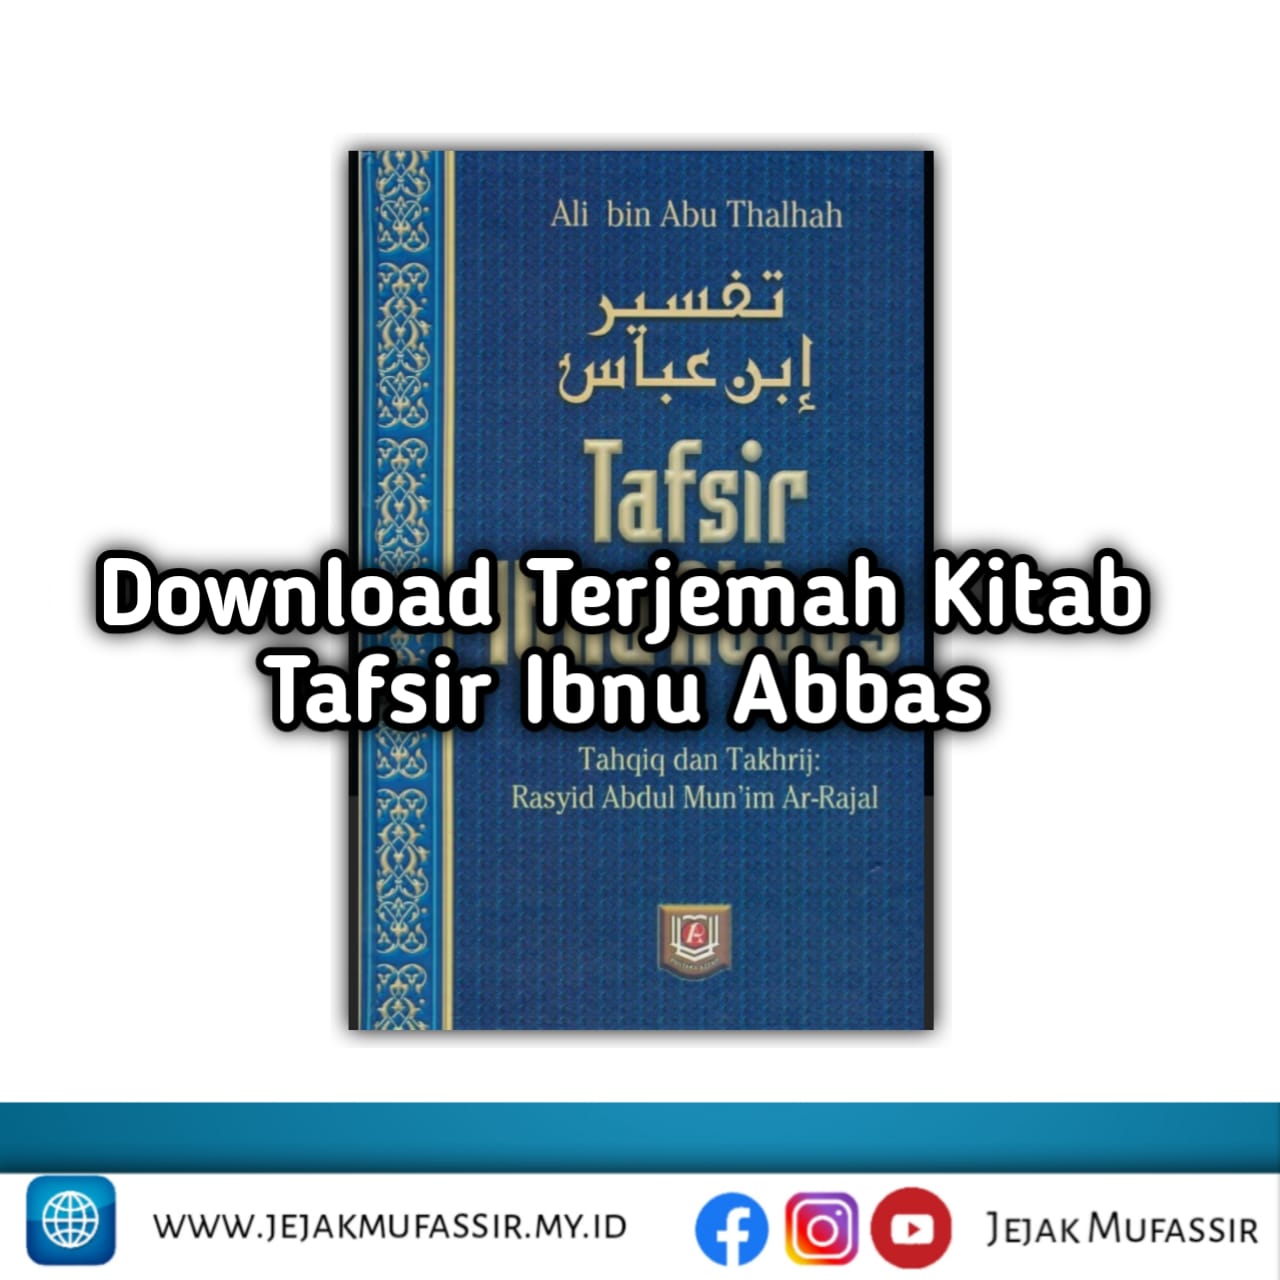 Download Terjemah Kitab Tafsir Ibnu Abbas